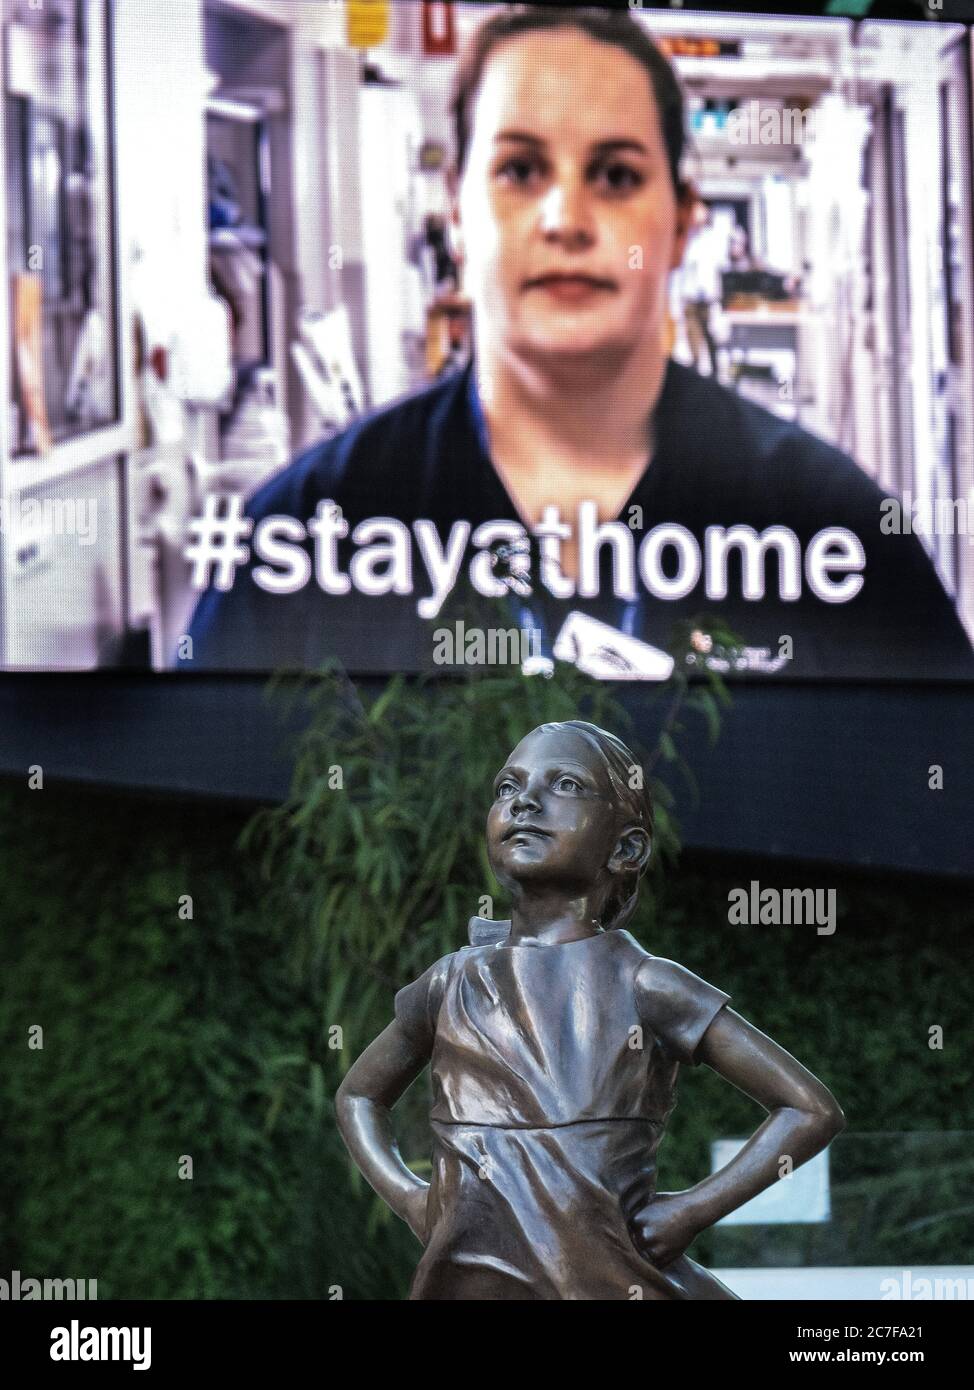 Melbourne Australia pandemia de Covid-19. La estatua de la Niña temible se encuentra ante la campaña publicitaria electrónica de la cartelera #stayathome en Federation Square. Foto de stock